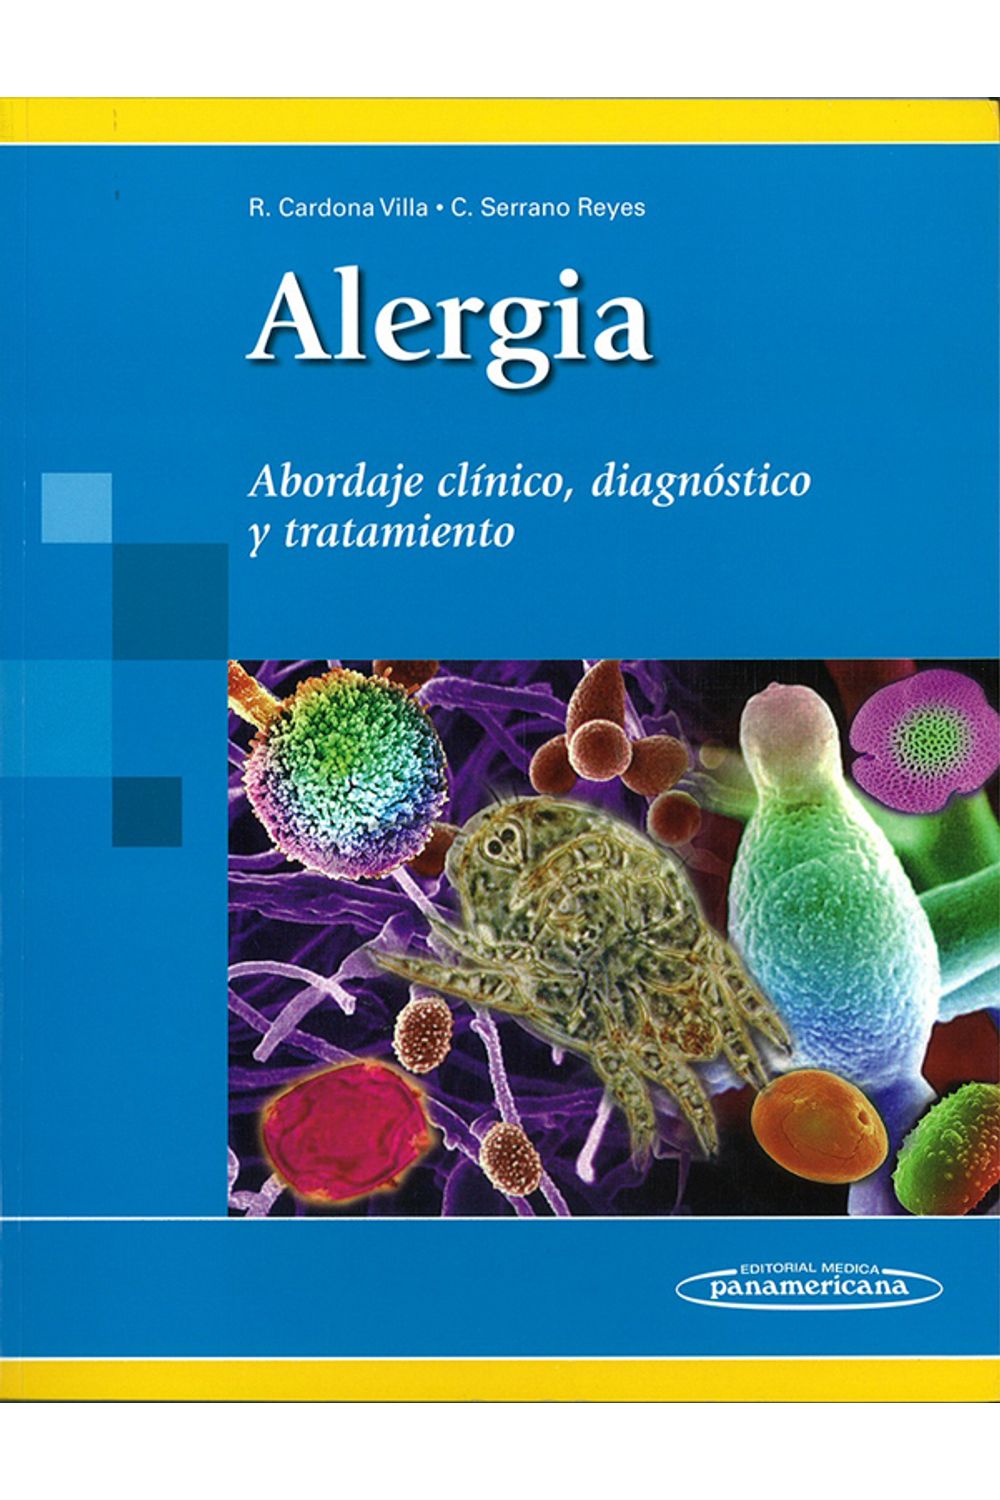 alergia-9789588443058-empa